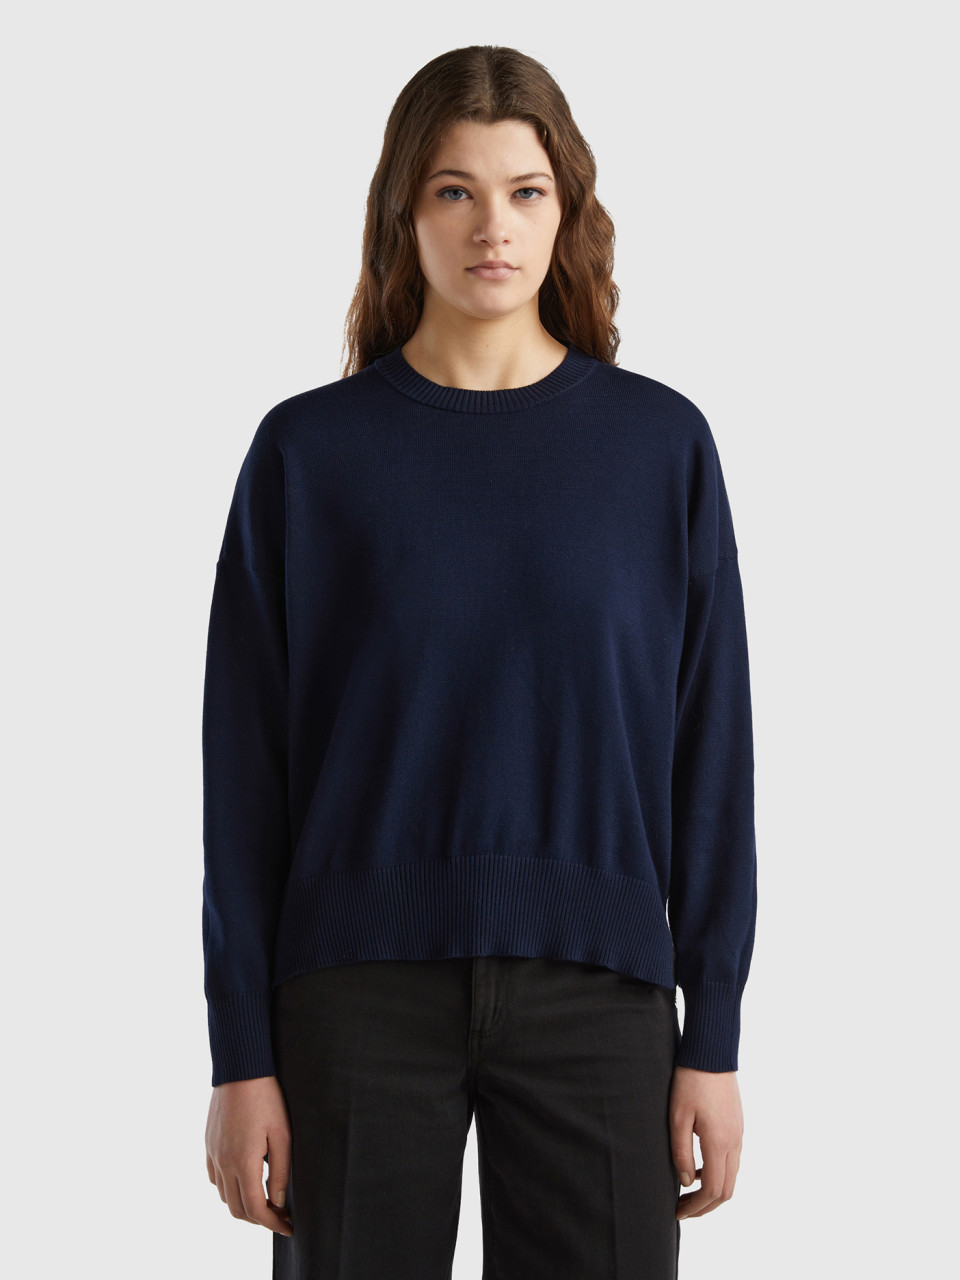 Benetton, Crew Neck Sweater In Tricot Cotton, Dark Blue, Women